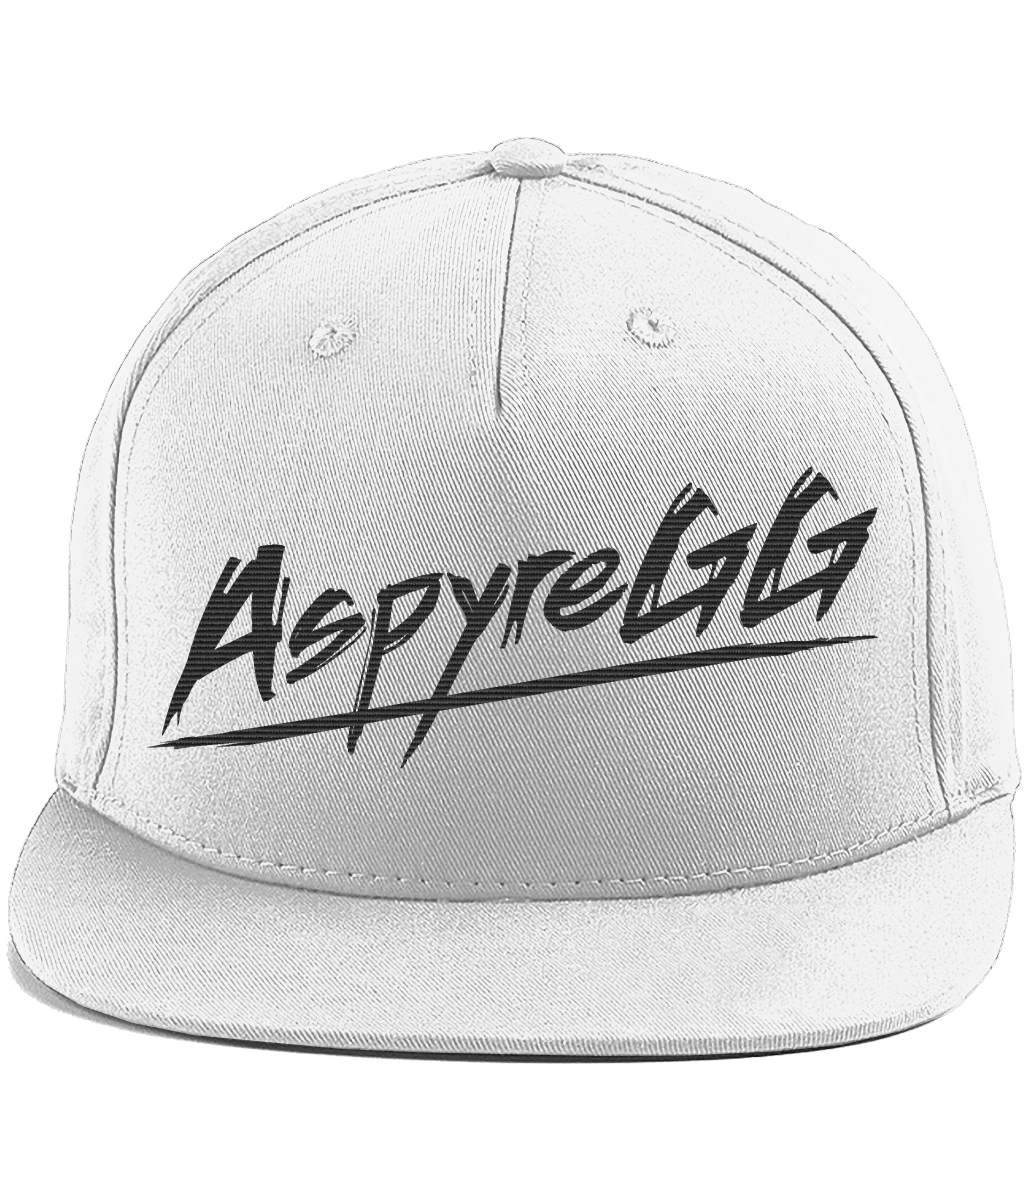 AspyreGG Cotton Rapper Snapback Cap